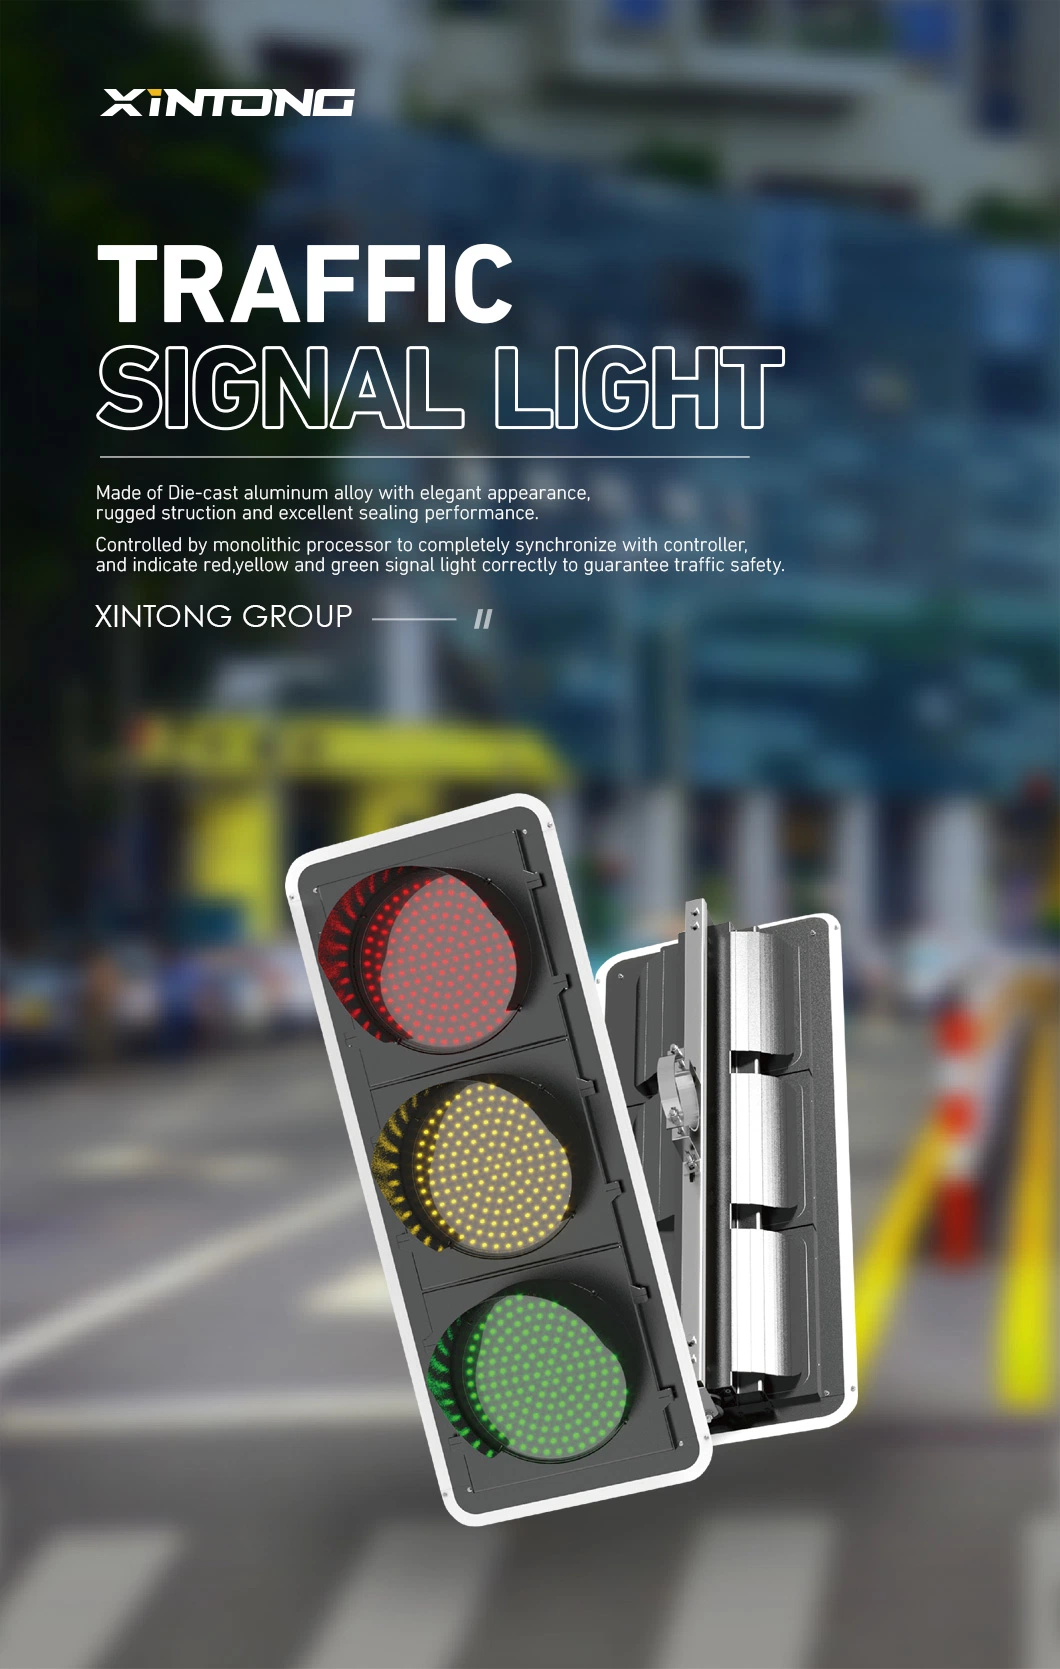 Vehicle Xintong 200mm China Warning Lamp Traffic Signal Light Xt-Tr-001